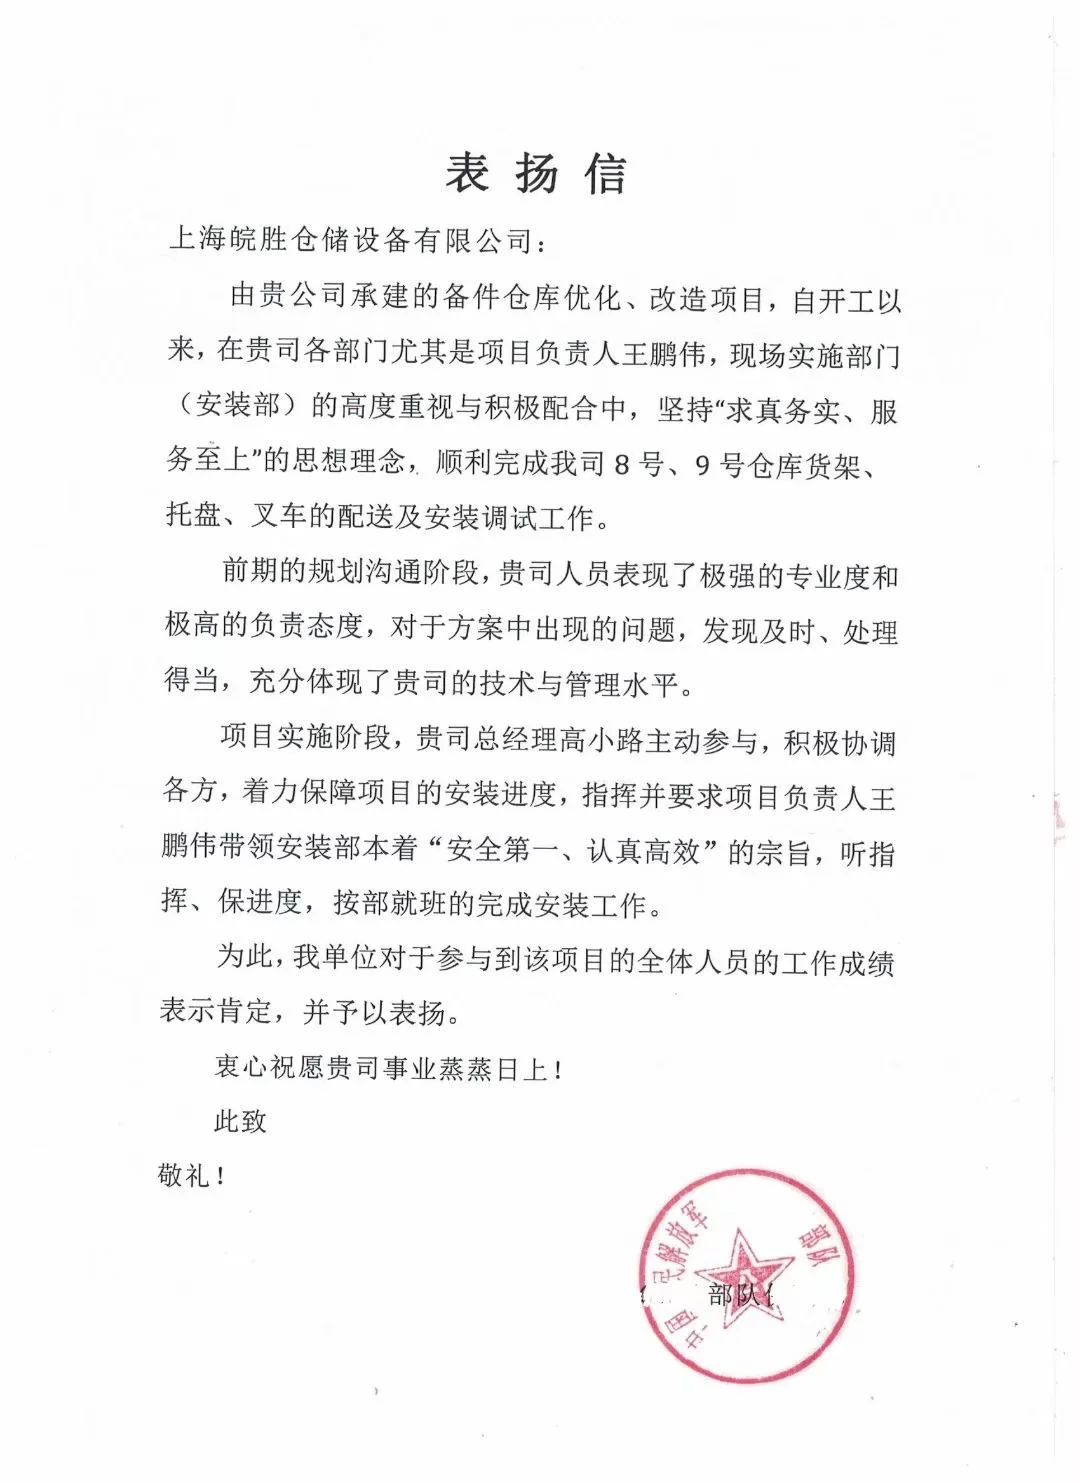 收到一封来自中国人民解放军某部队保障部的表扬信